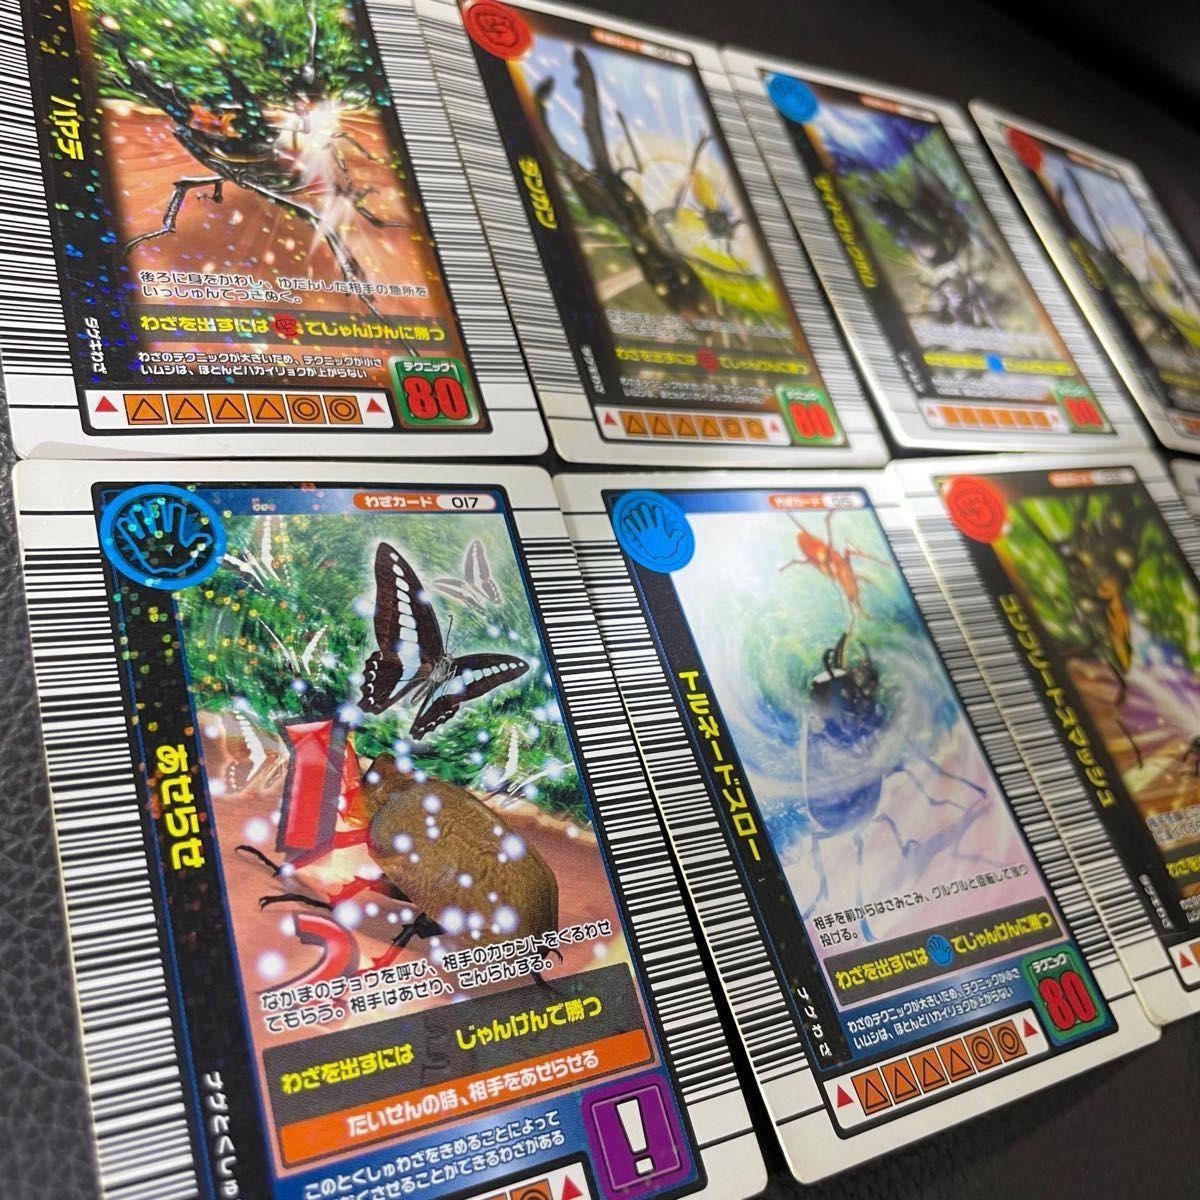 甲虫王者ムシキング カードゲーム 2004-05 夏限定カード ミラーカード 8枚セット カード一覧表付き